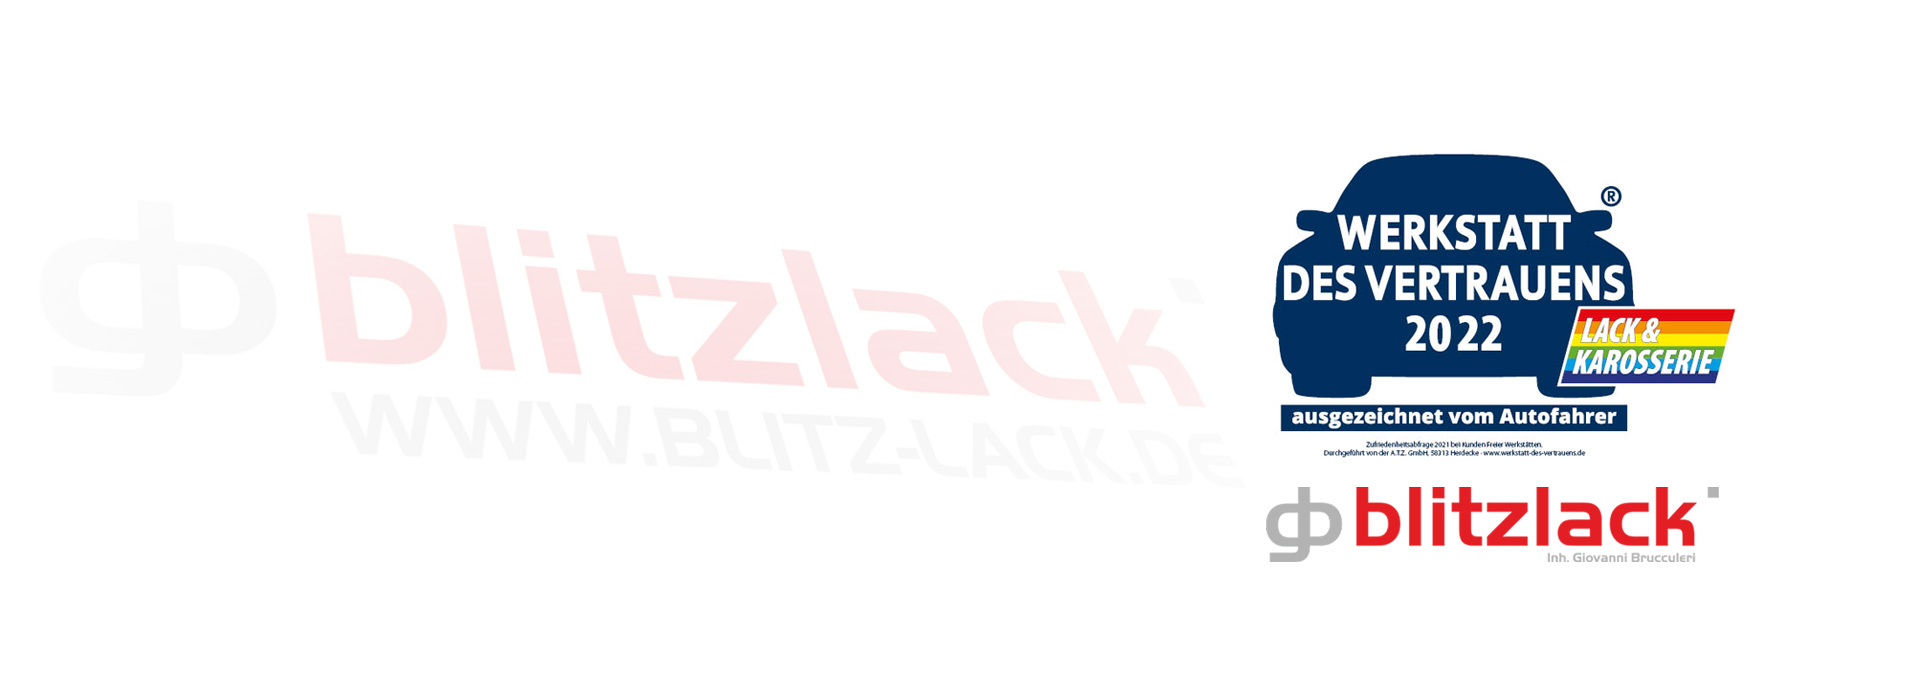 Werkstatt des Vertrauens - BlitzLack in Weiterstadt/Darmstadt-LADADI - WDV - 2016-2022